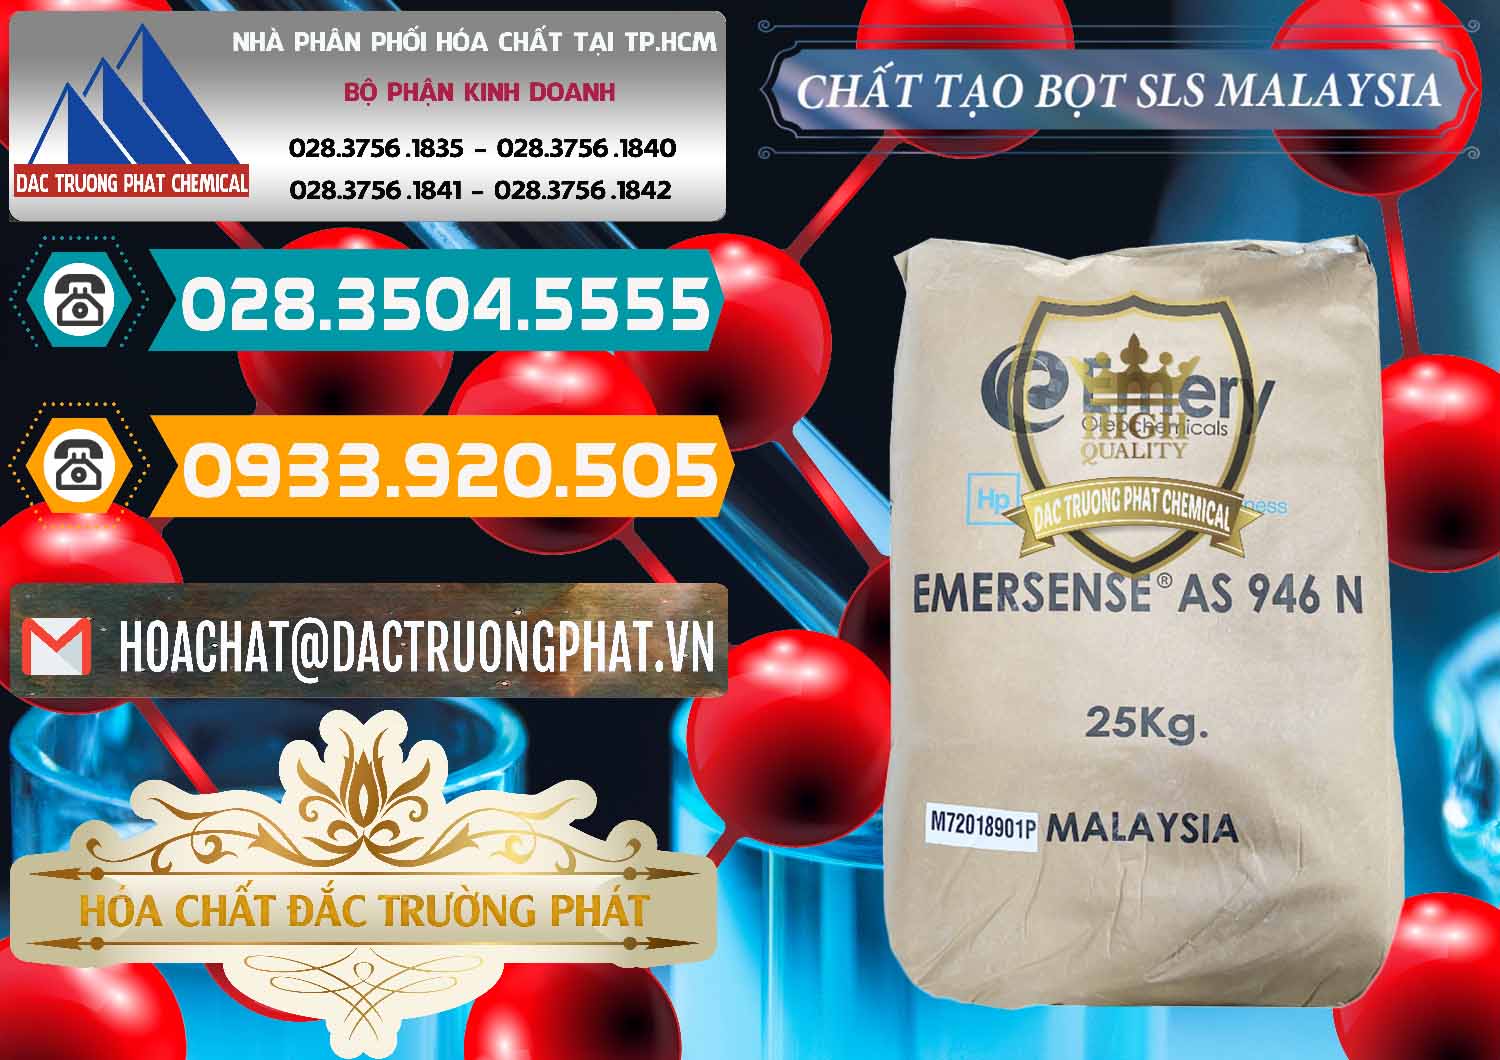 Công ty bán _ cung ứng Chất Tạo Bọt SLS Emery - Emersense AS 946N Mã Lai Malaysia - 0423 - Cty cung cấp - bán hóa chất tại TP.HCM - congtyhoachat.vn